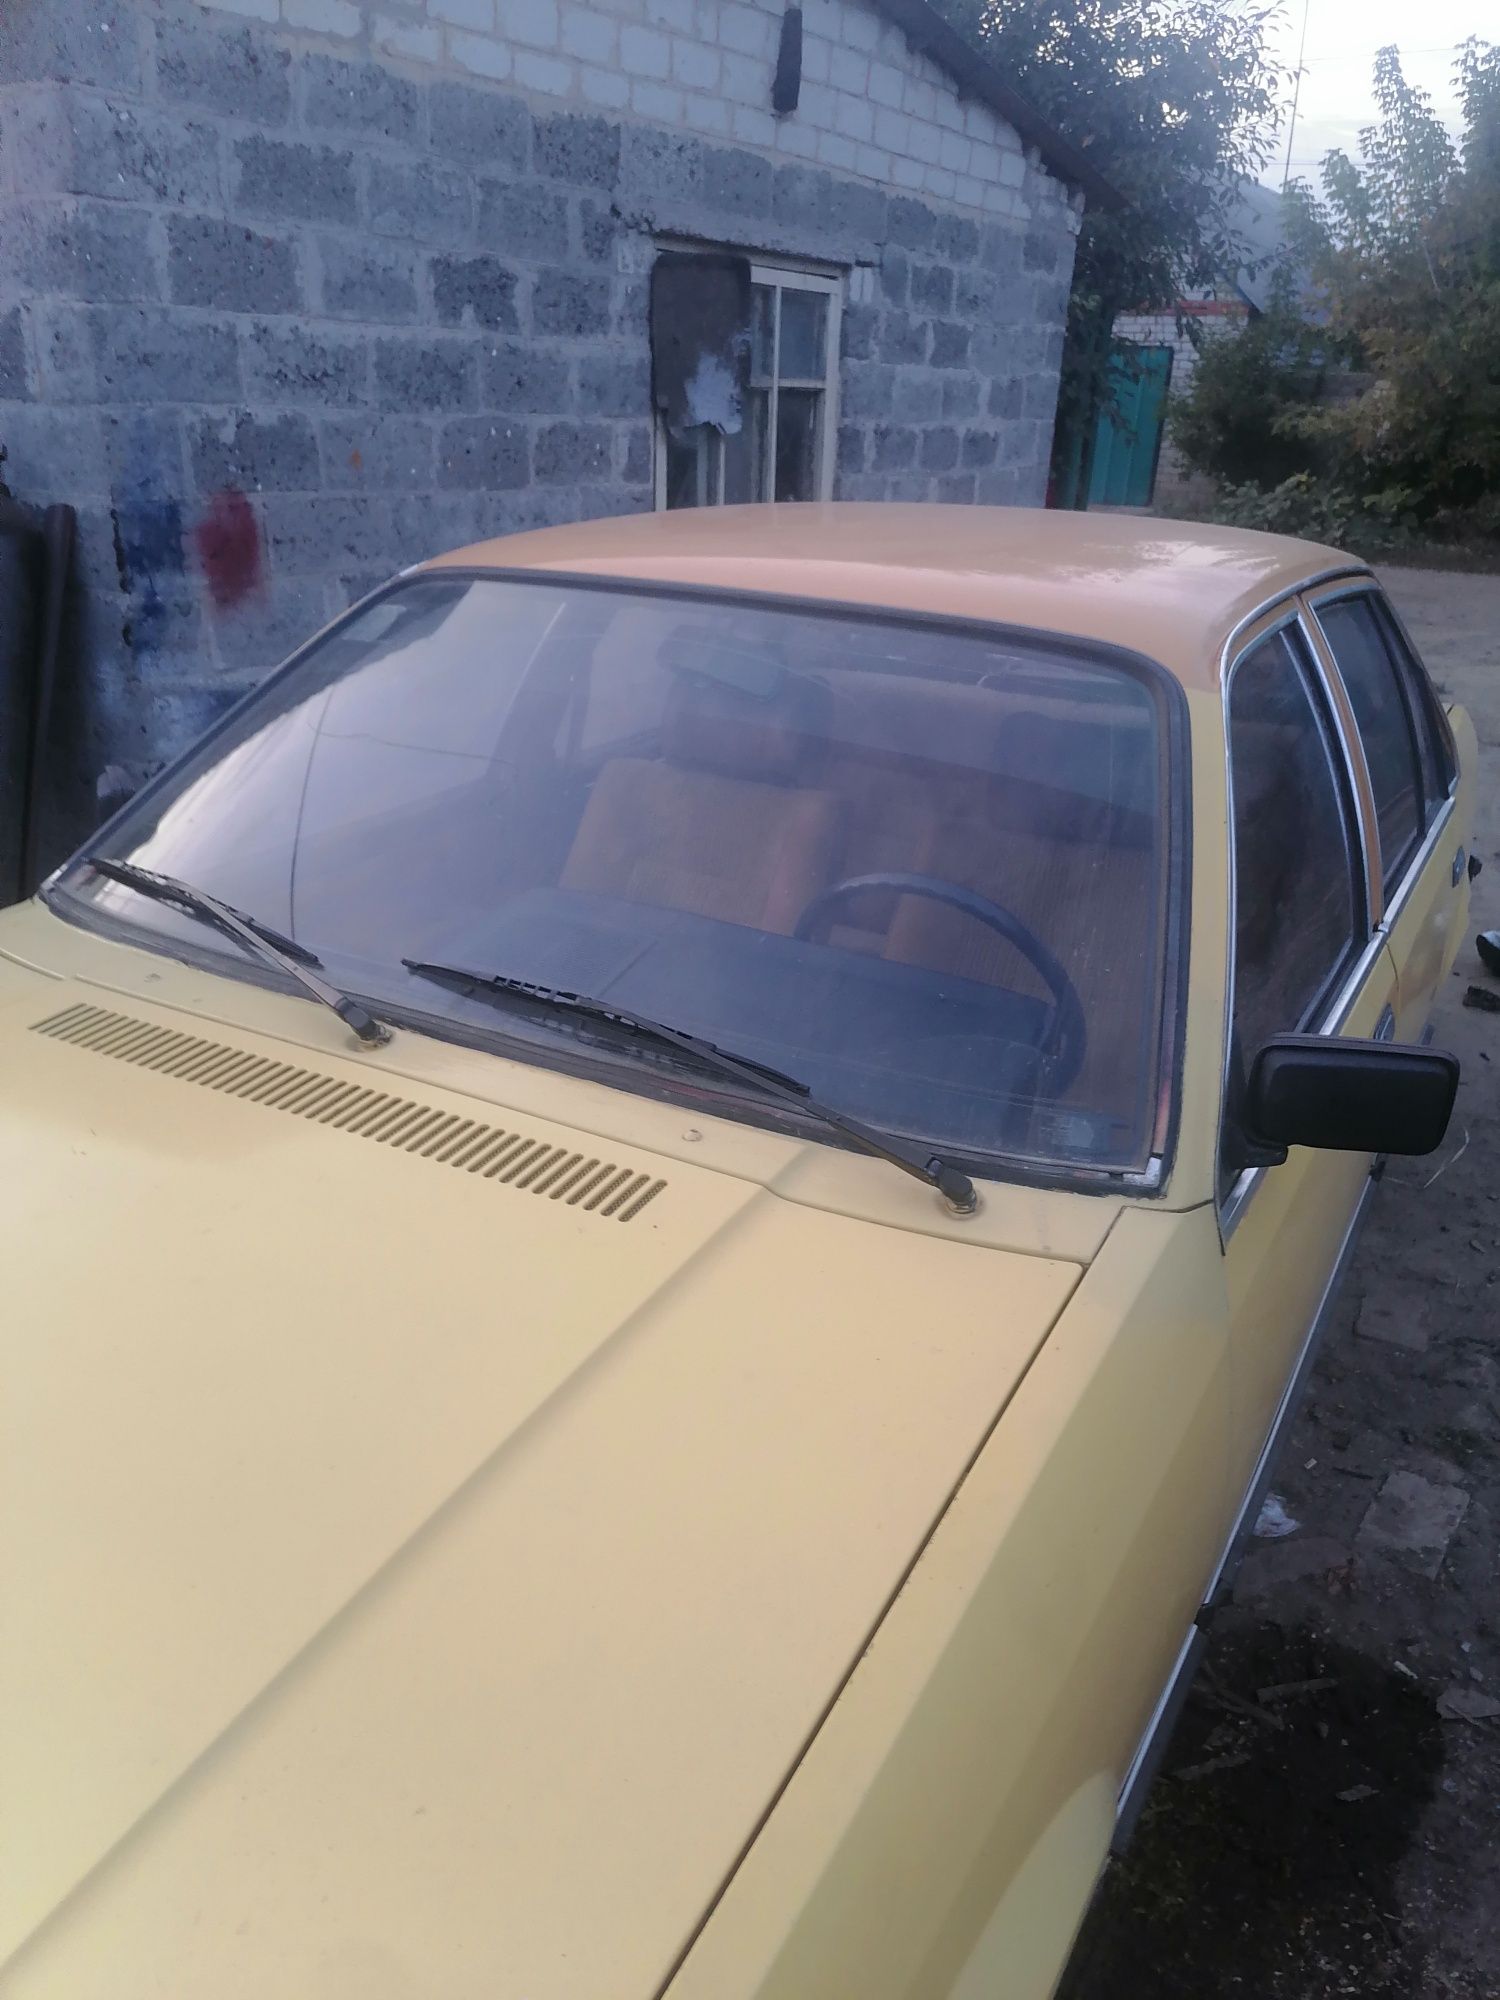 Продам Opel Rekord в хорошем состоянии 1978 года почти капсула времени